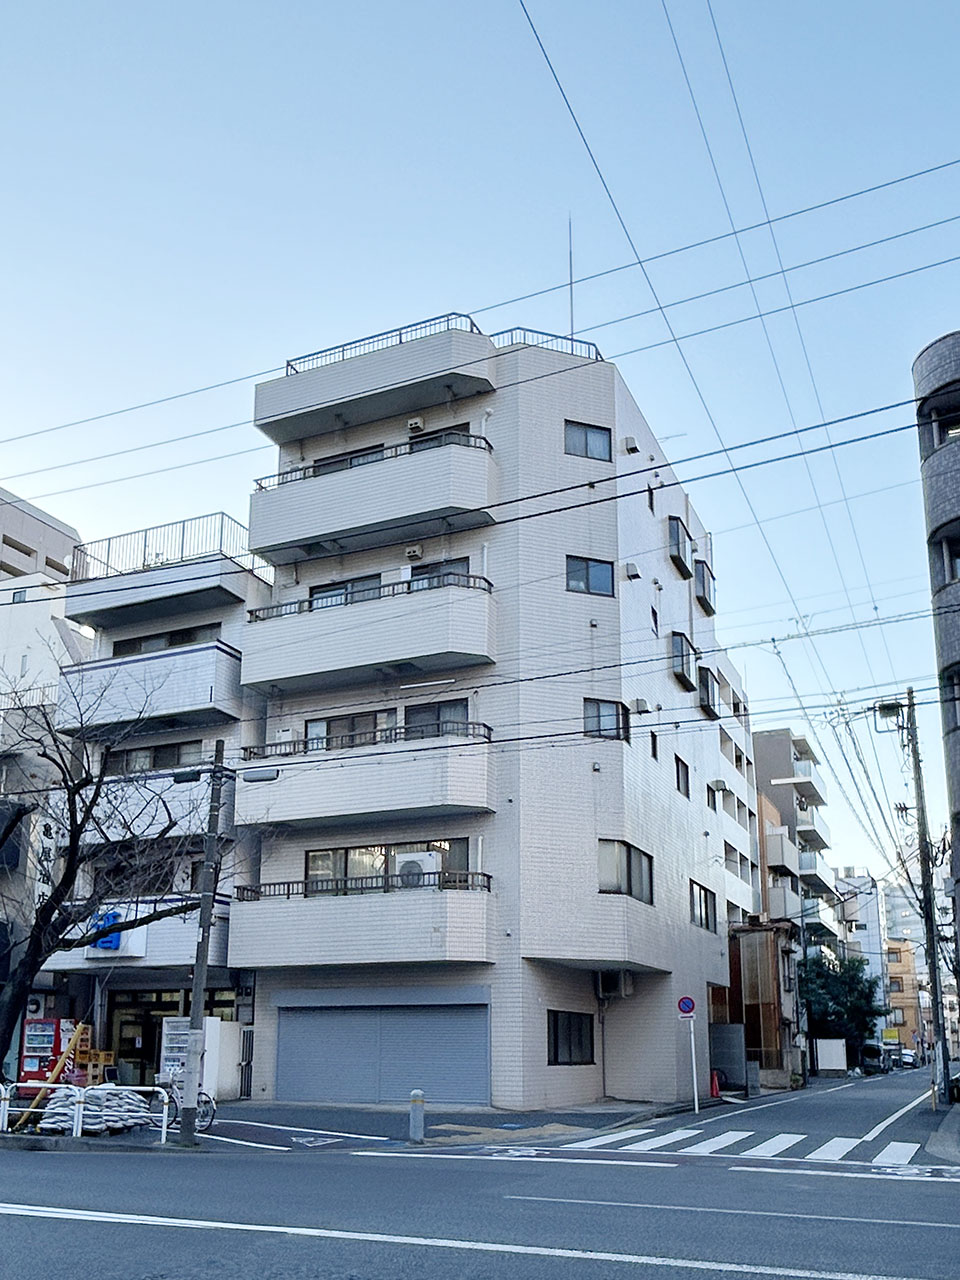 Okayasubuilding